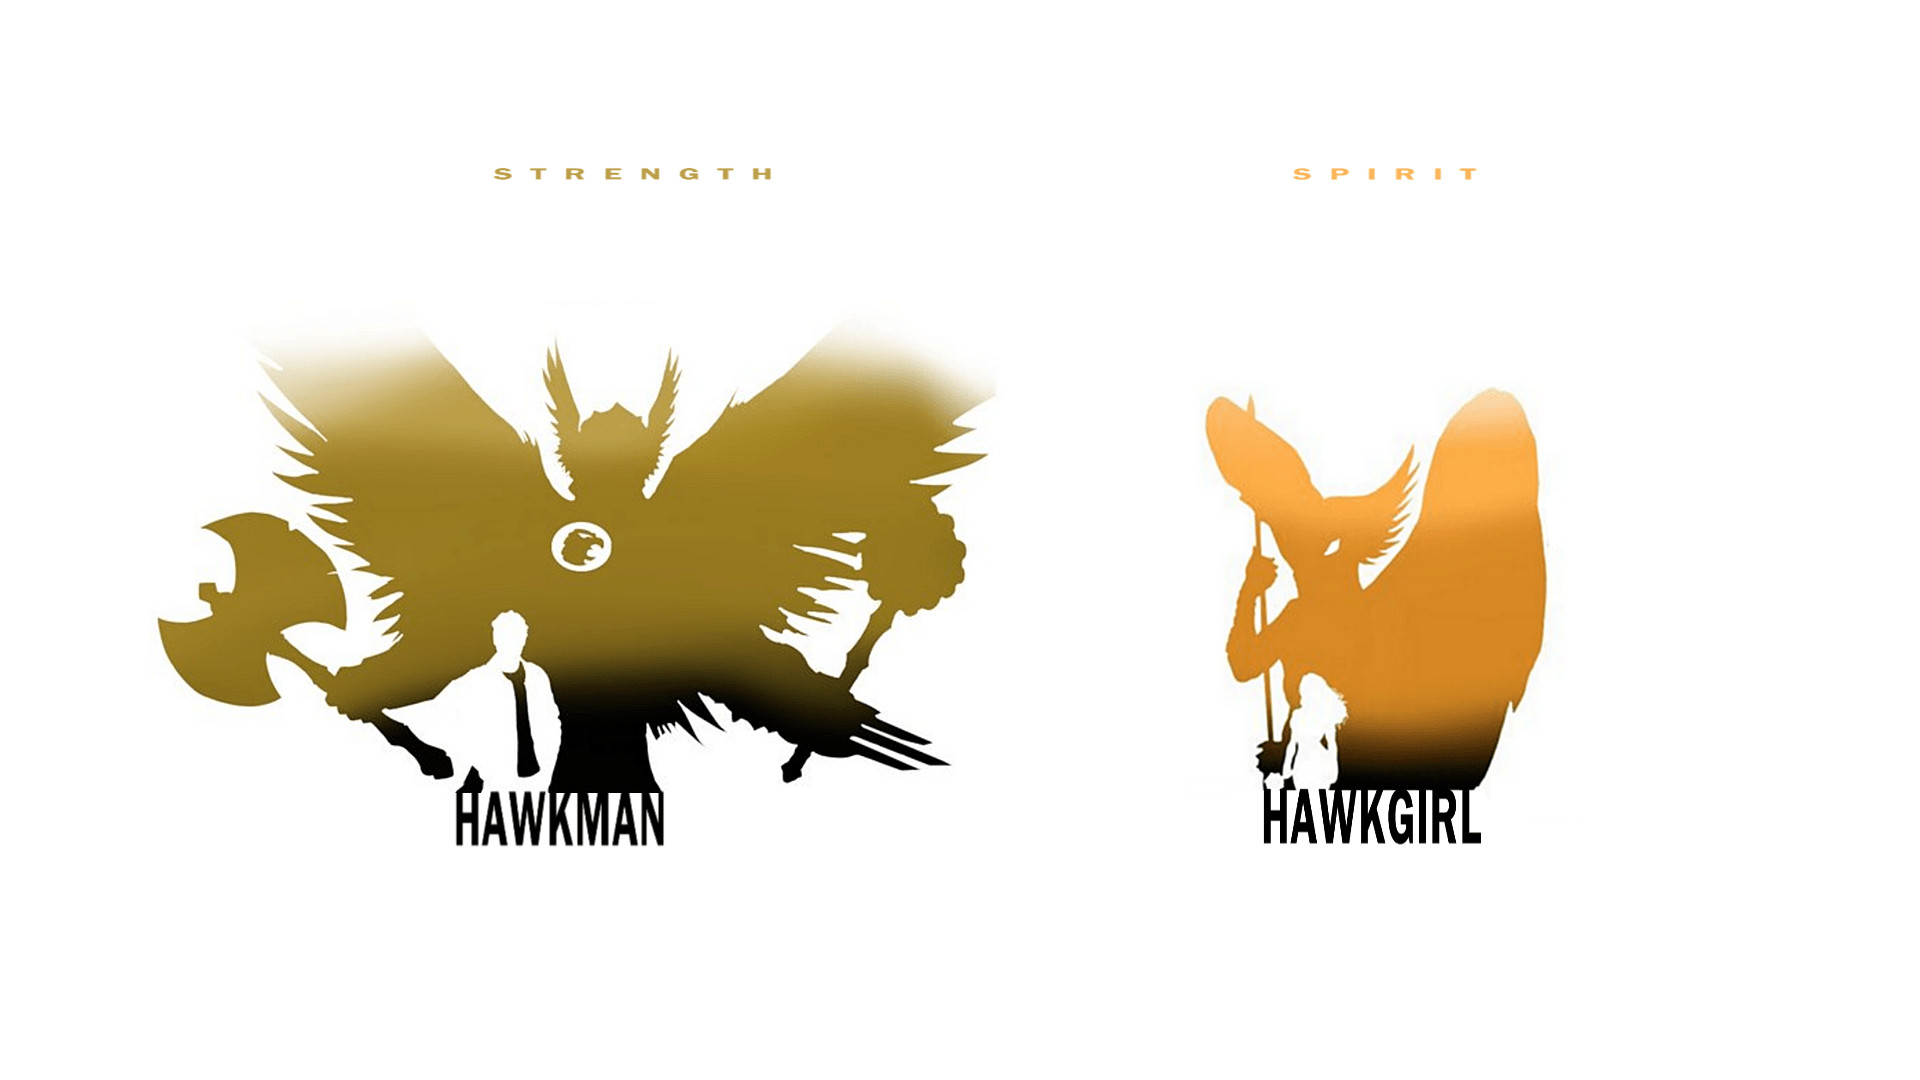 1920x1080 Hawkman - Hawkgirl by SteveGarciaArt on DeviantArt